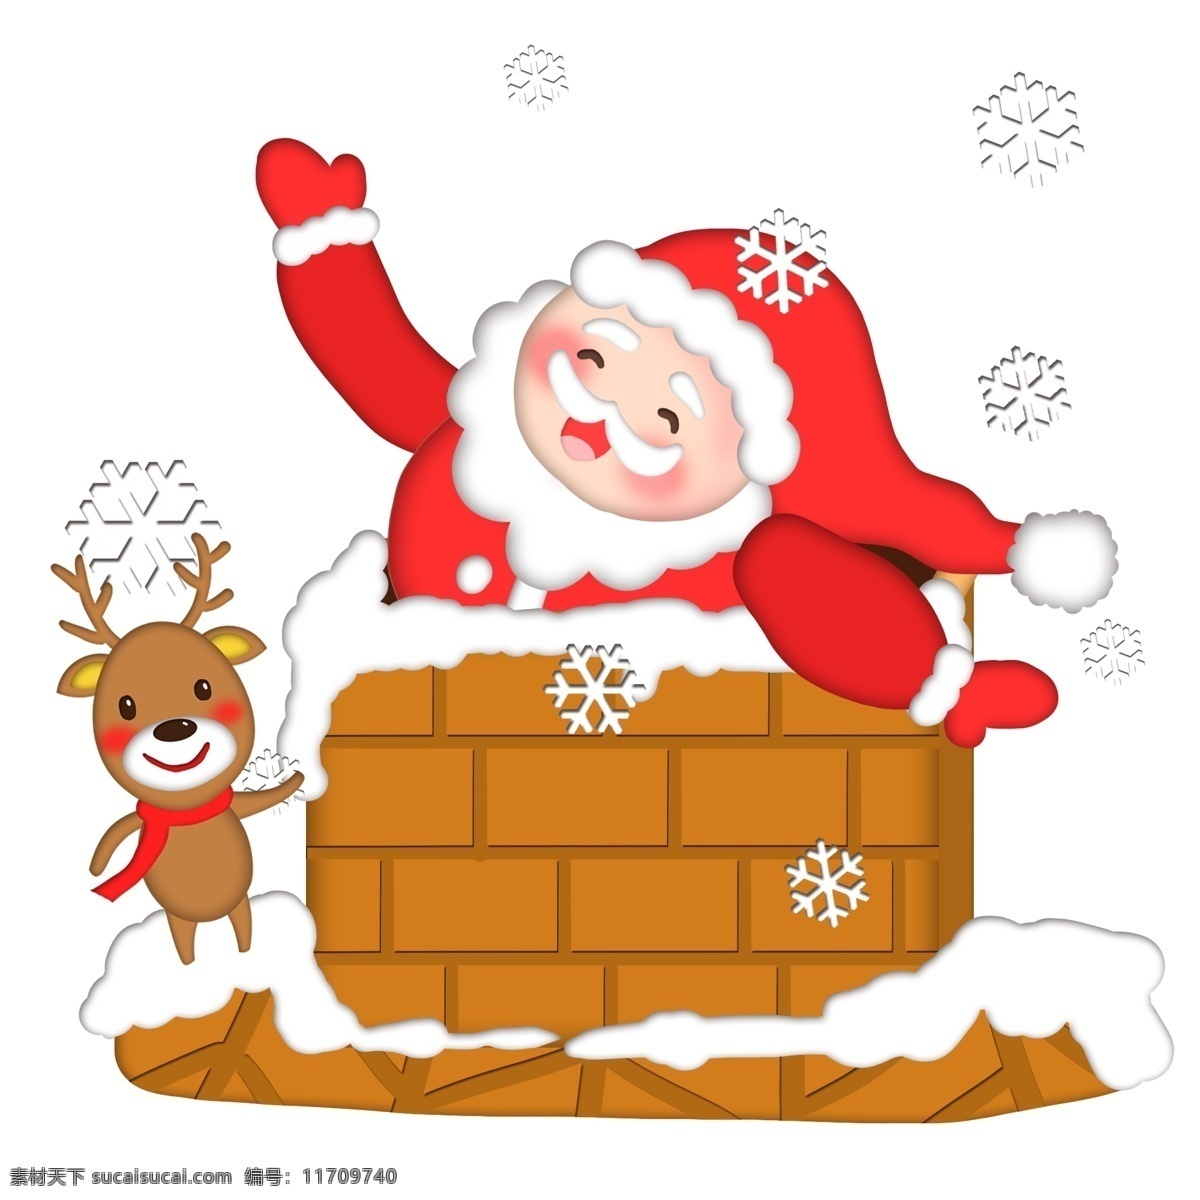 卡通 手绘 圣诞老人 麋鹿 爬 烟囱 雪人 下雪 雪花 送礼物 圣诞节 圣诞夜 屋顶 红色系